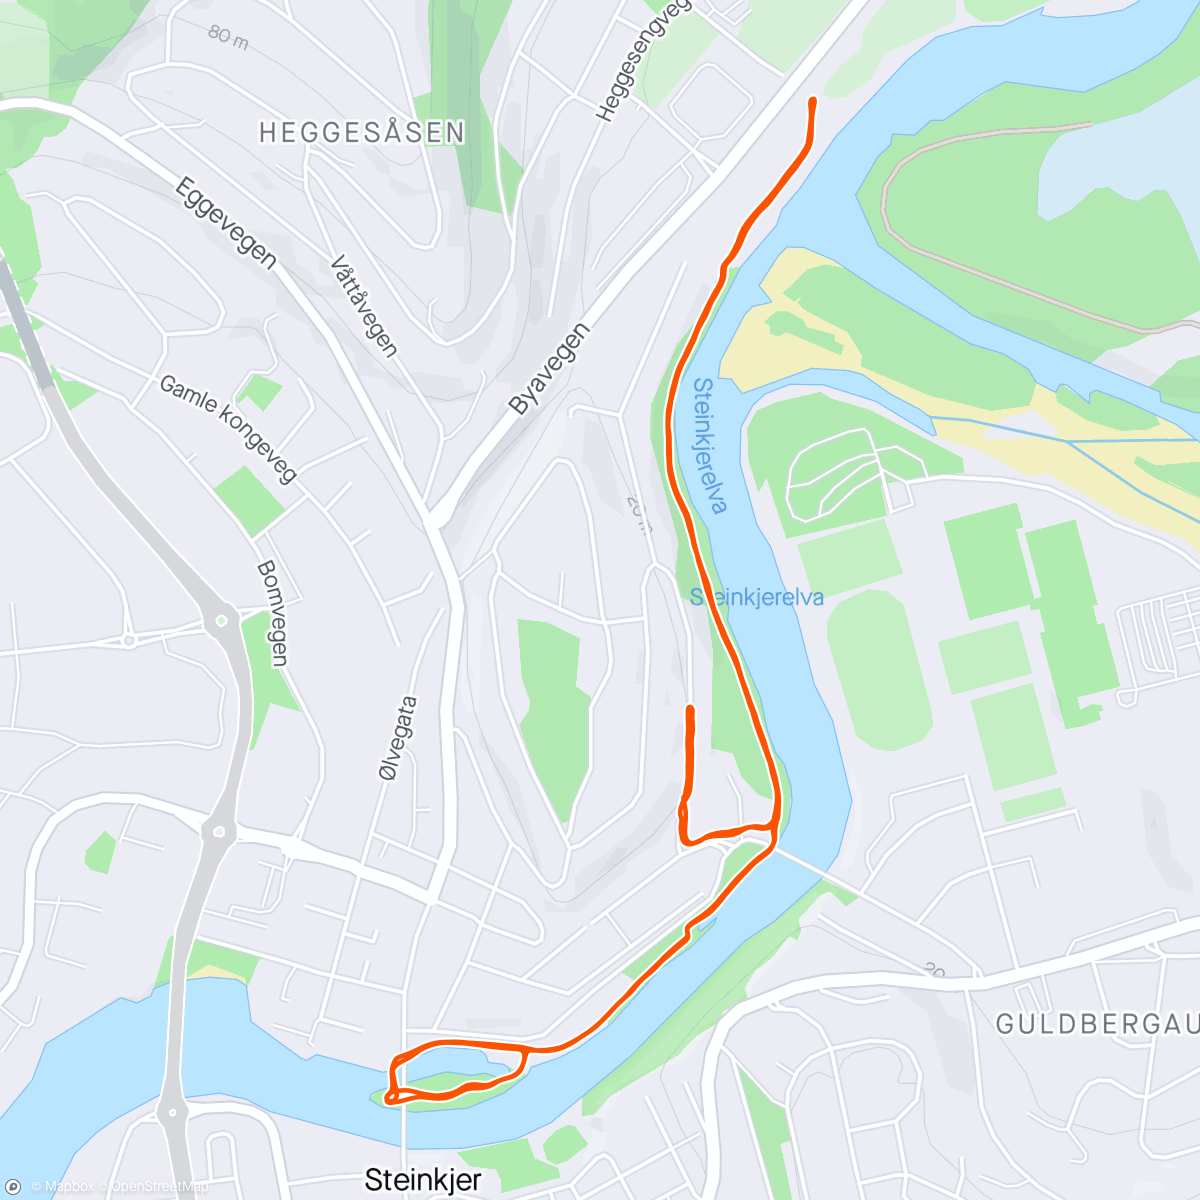 「Steinkjer Run」活動的地圖